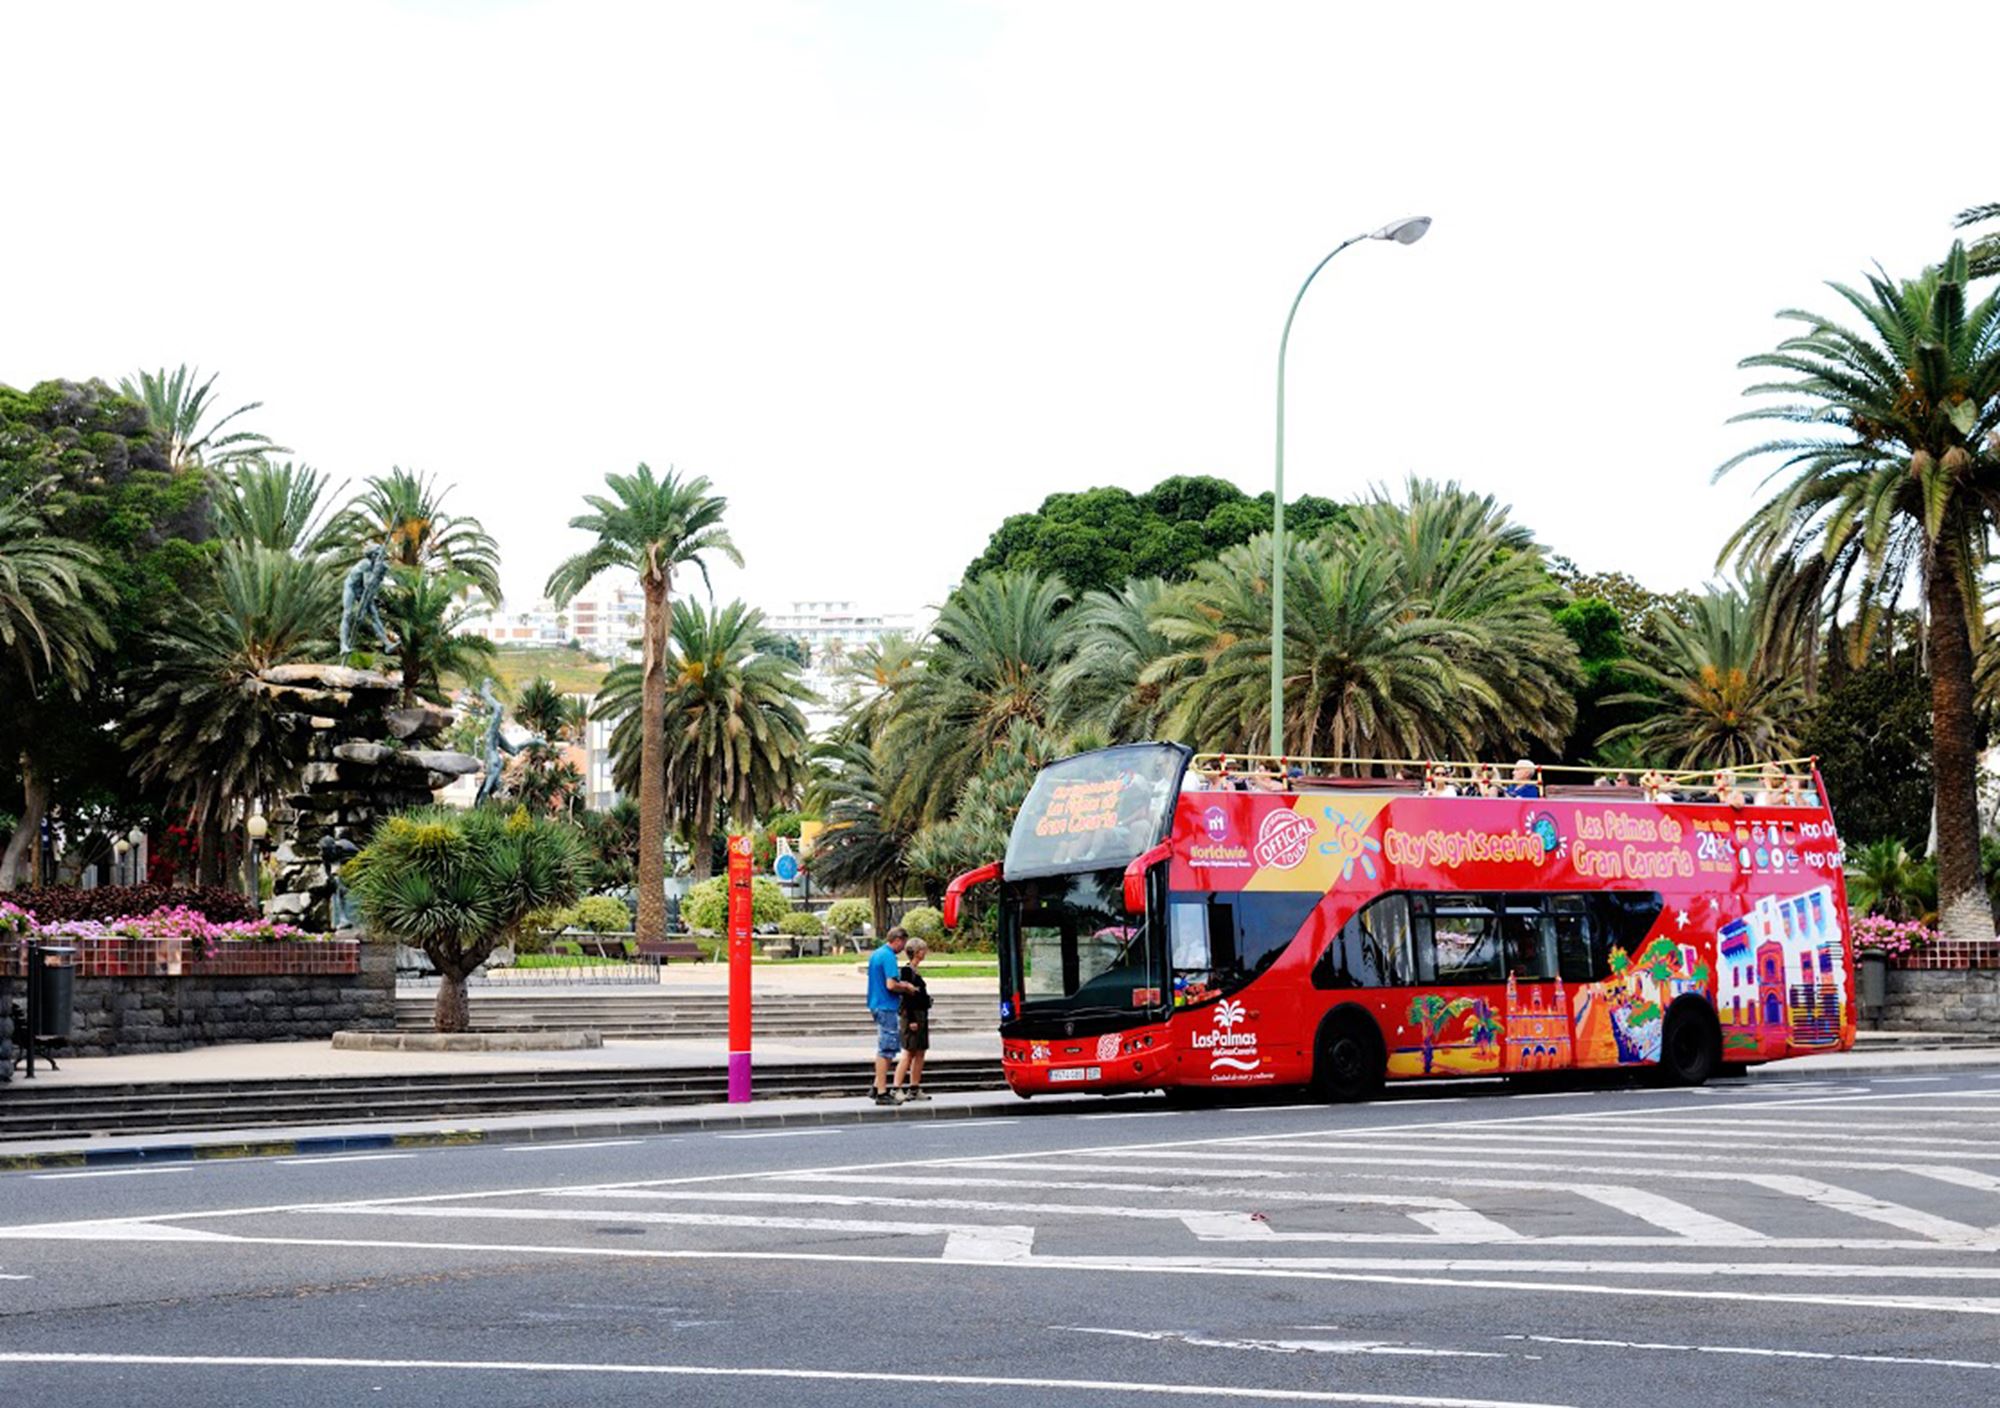 réservations visites guidées Bus Touristique City Sightseeing Las Palmas de Gran Canaria billets visiter